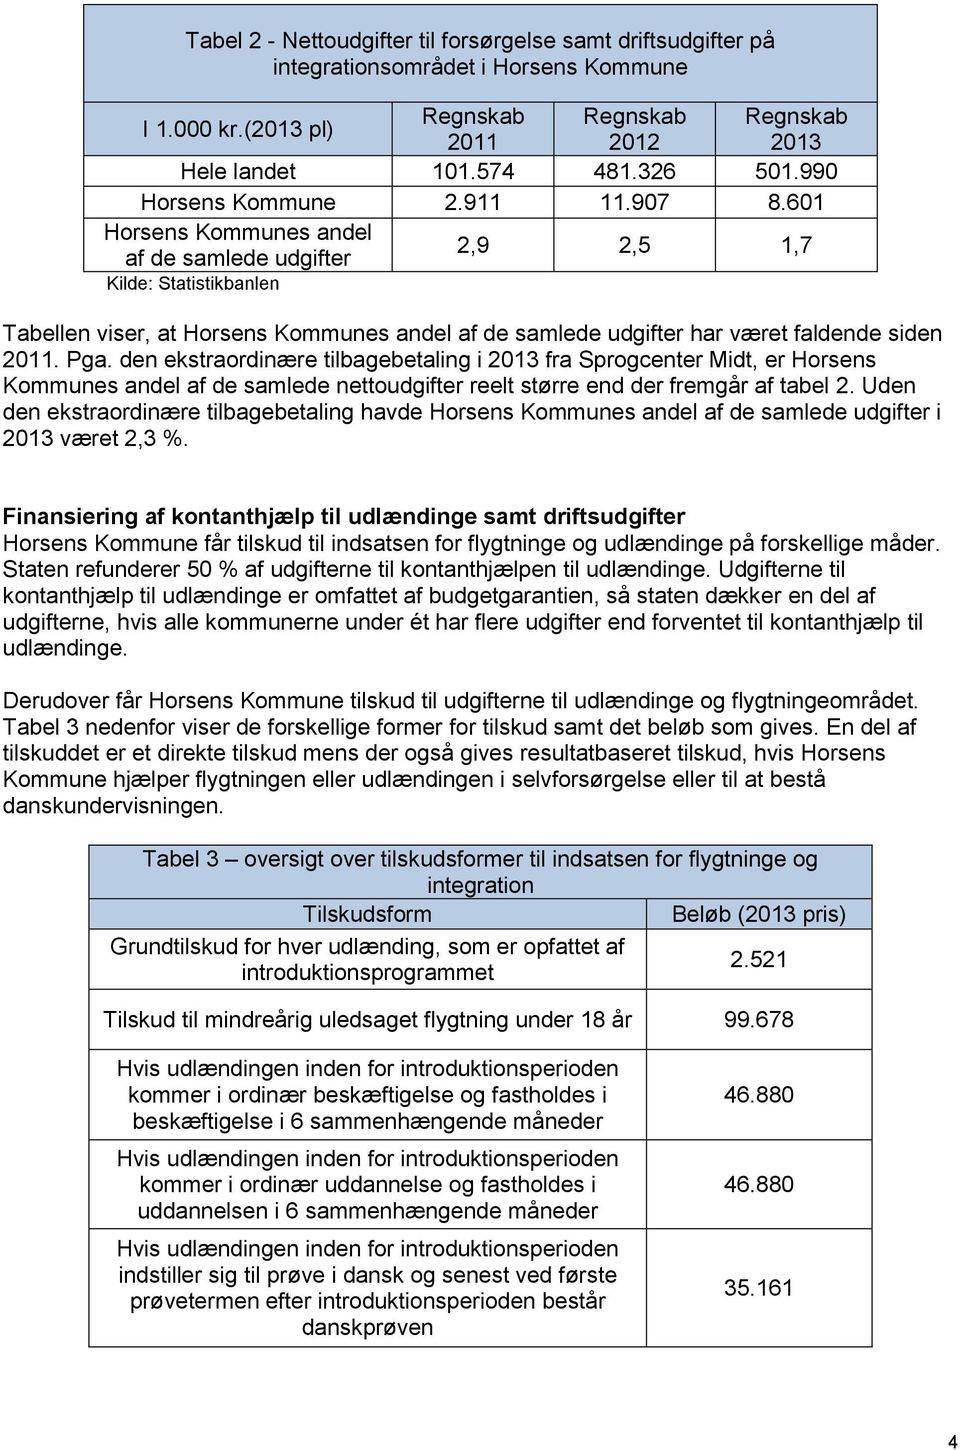 601 Horsens Kommunes andel af de samlede udgifter 2,9 2,5 1,7 Kilde: Statistikbanlen Tabellen viser, at Horsens Kommunes andel af de samlede udgifter har været faldende siden 2011. Pga.